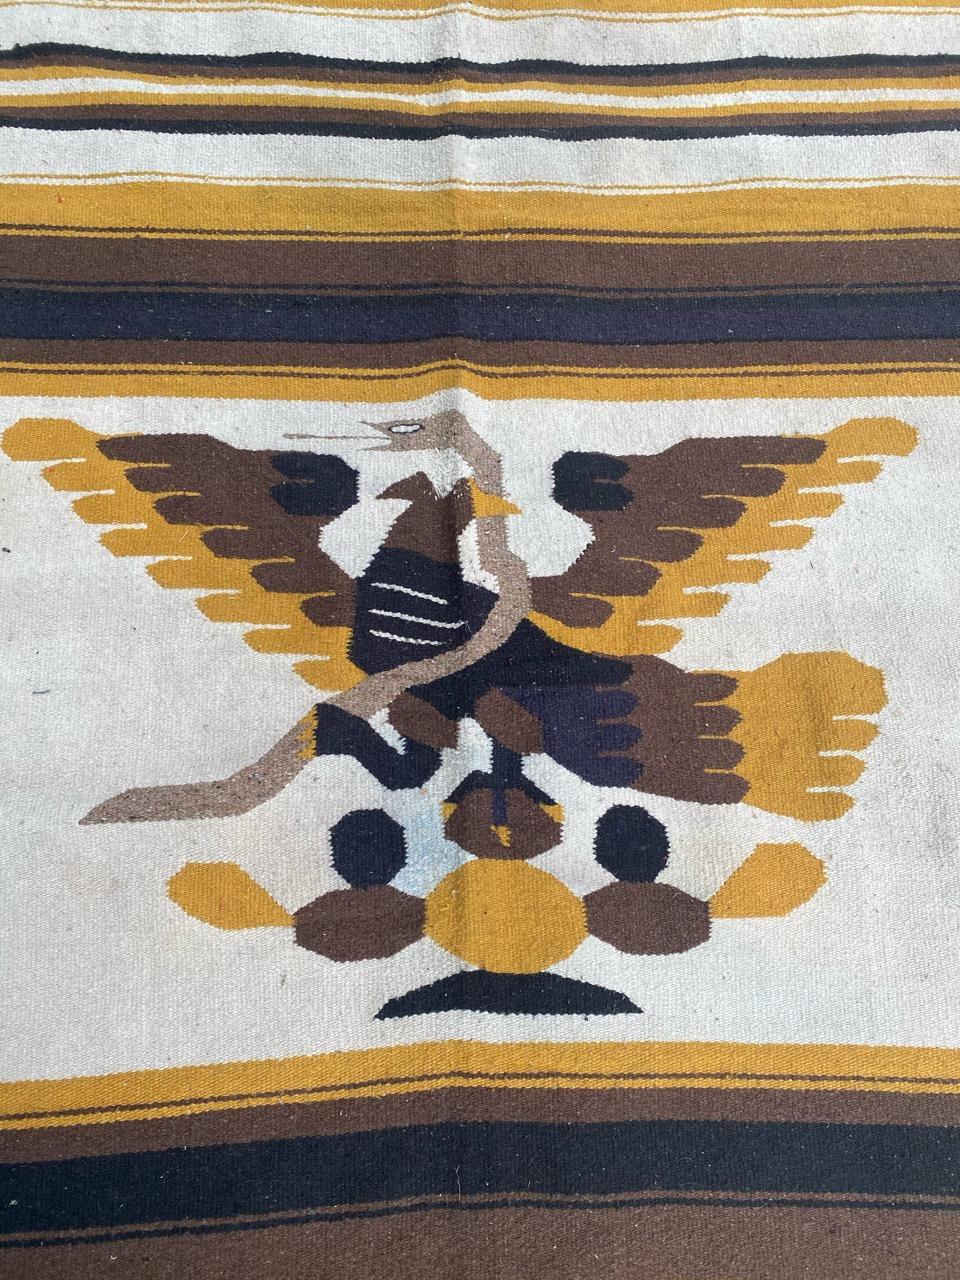 Schöne Mitte des Jahrhunderts südamerikanischen Wandteppich mit schönen Design mit Adler und braunen und gelben Farben, vollständig von Hand gewebt mit Wolle auf Baumwolle Grundlage.

✨✨✨
